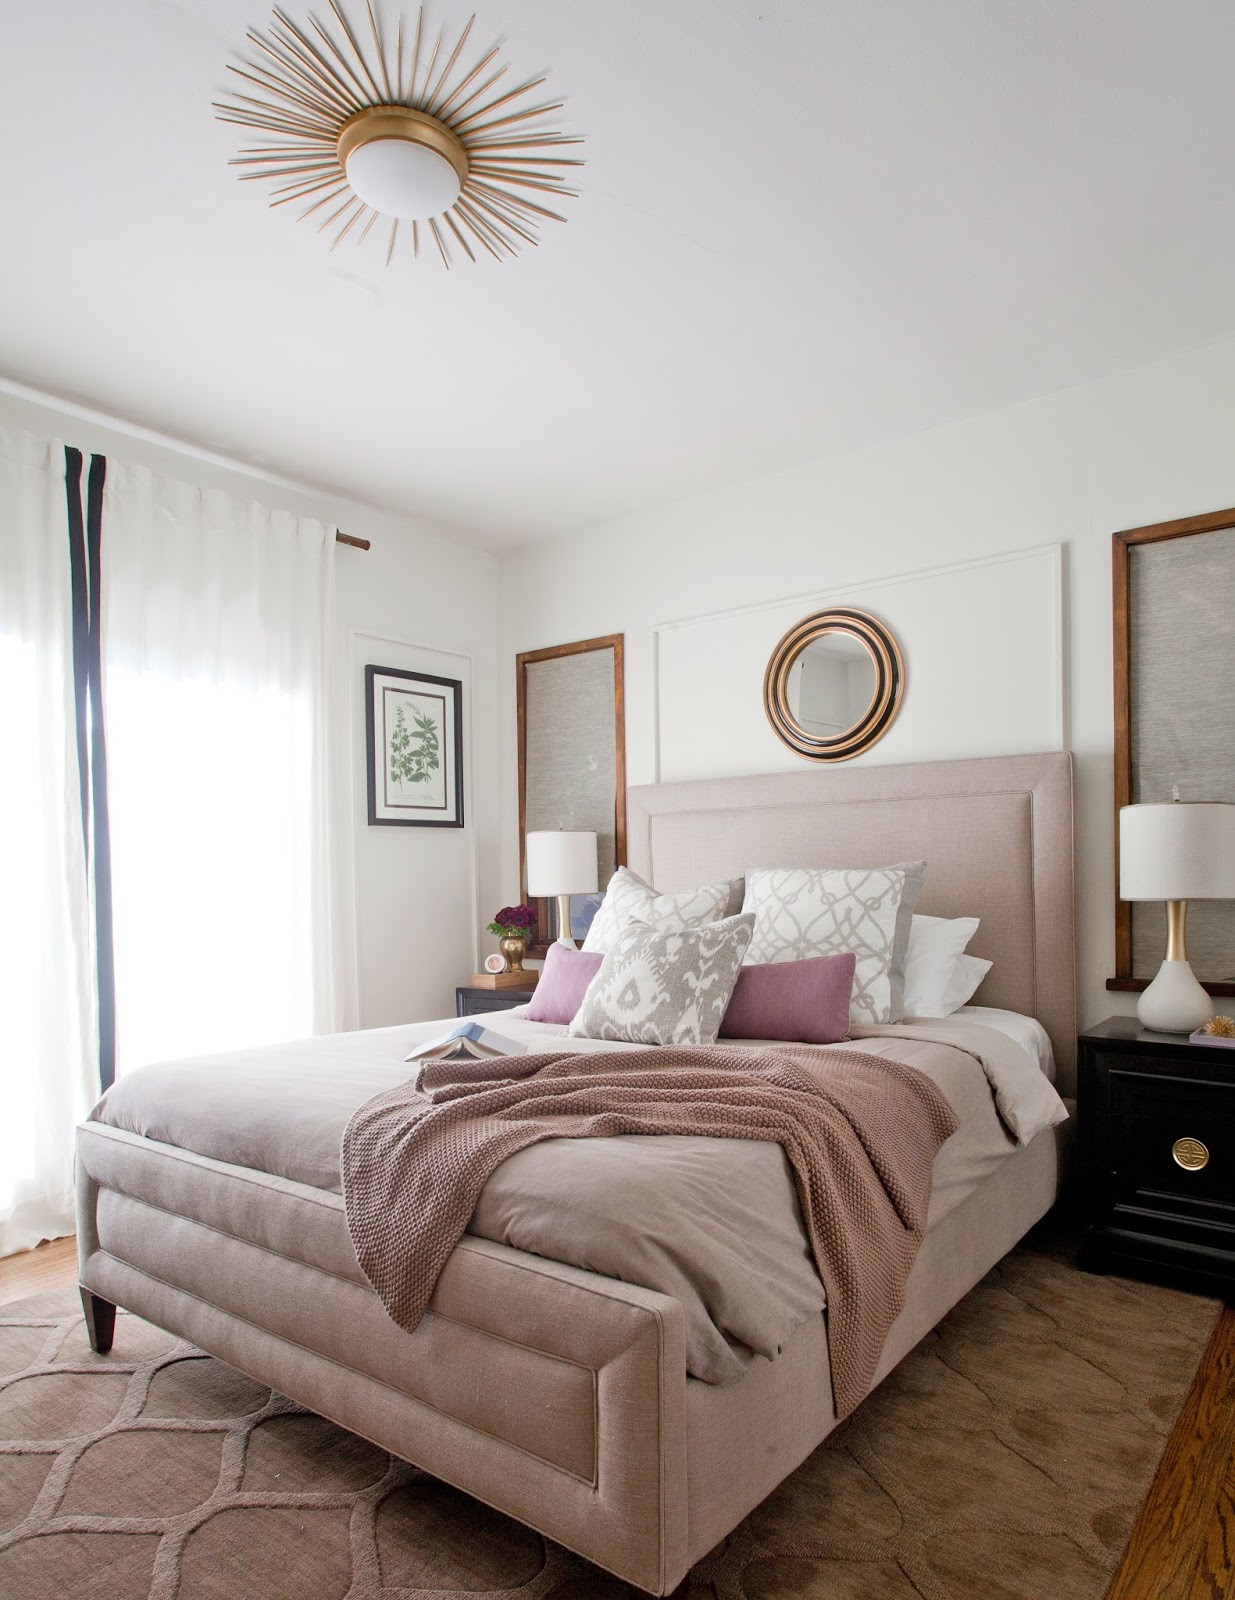 Bedroom Flush Mount Light
 Rosa Beltran Design DIY SUNBURST CEILING LIGHT